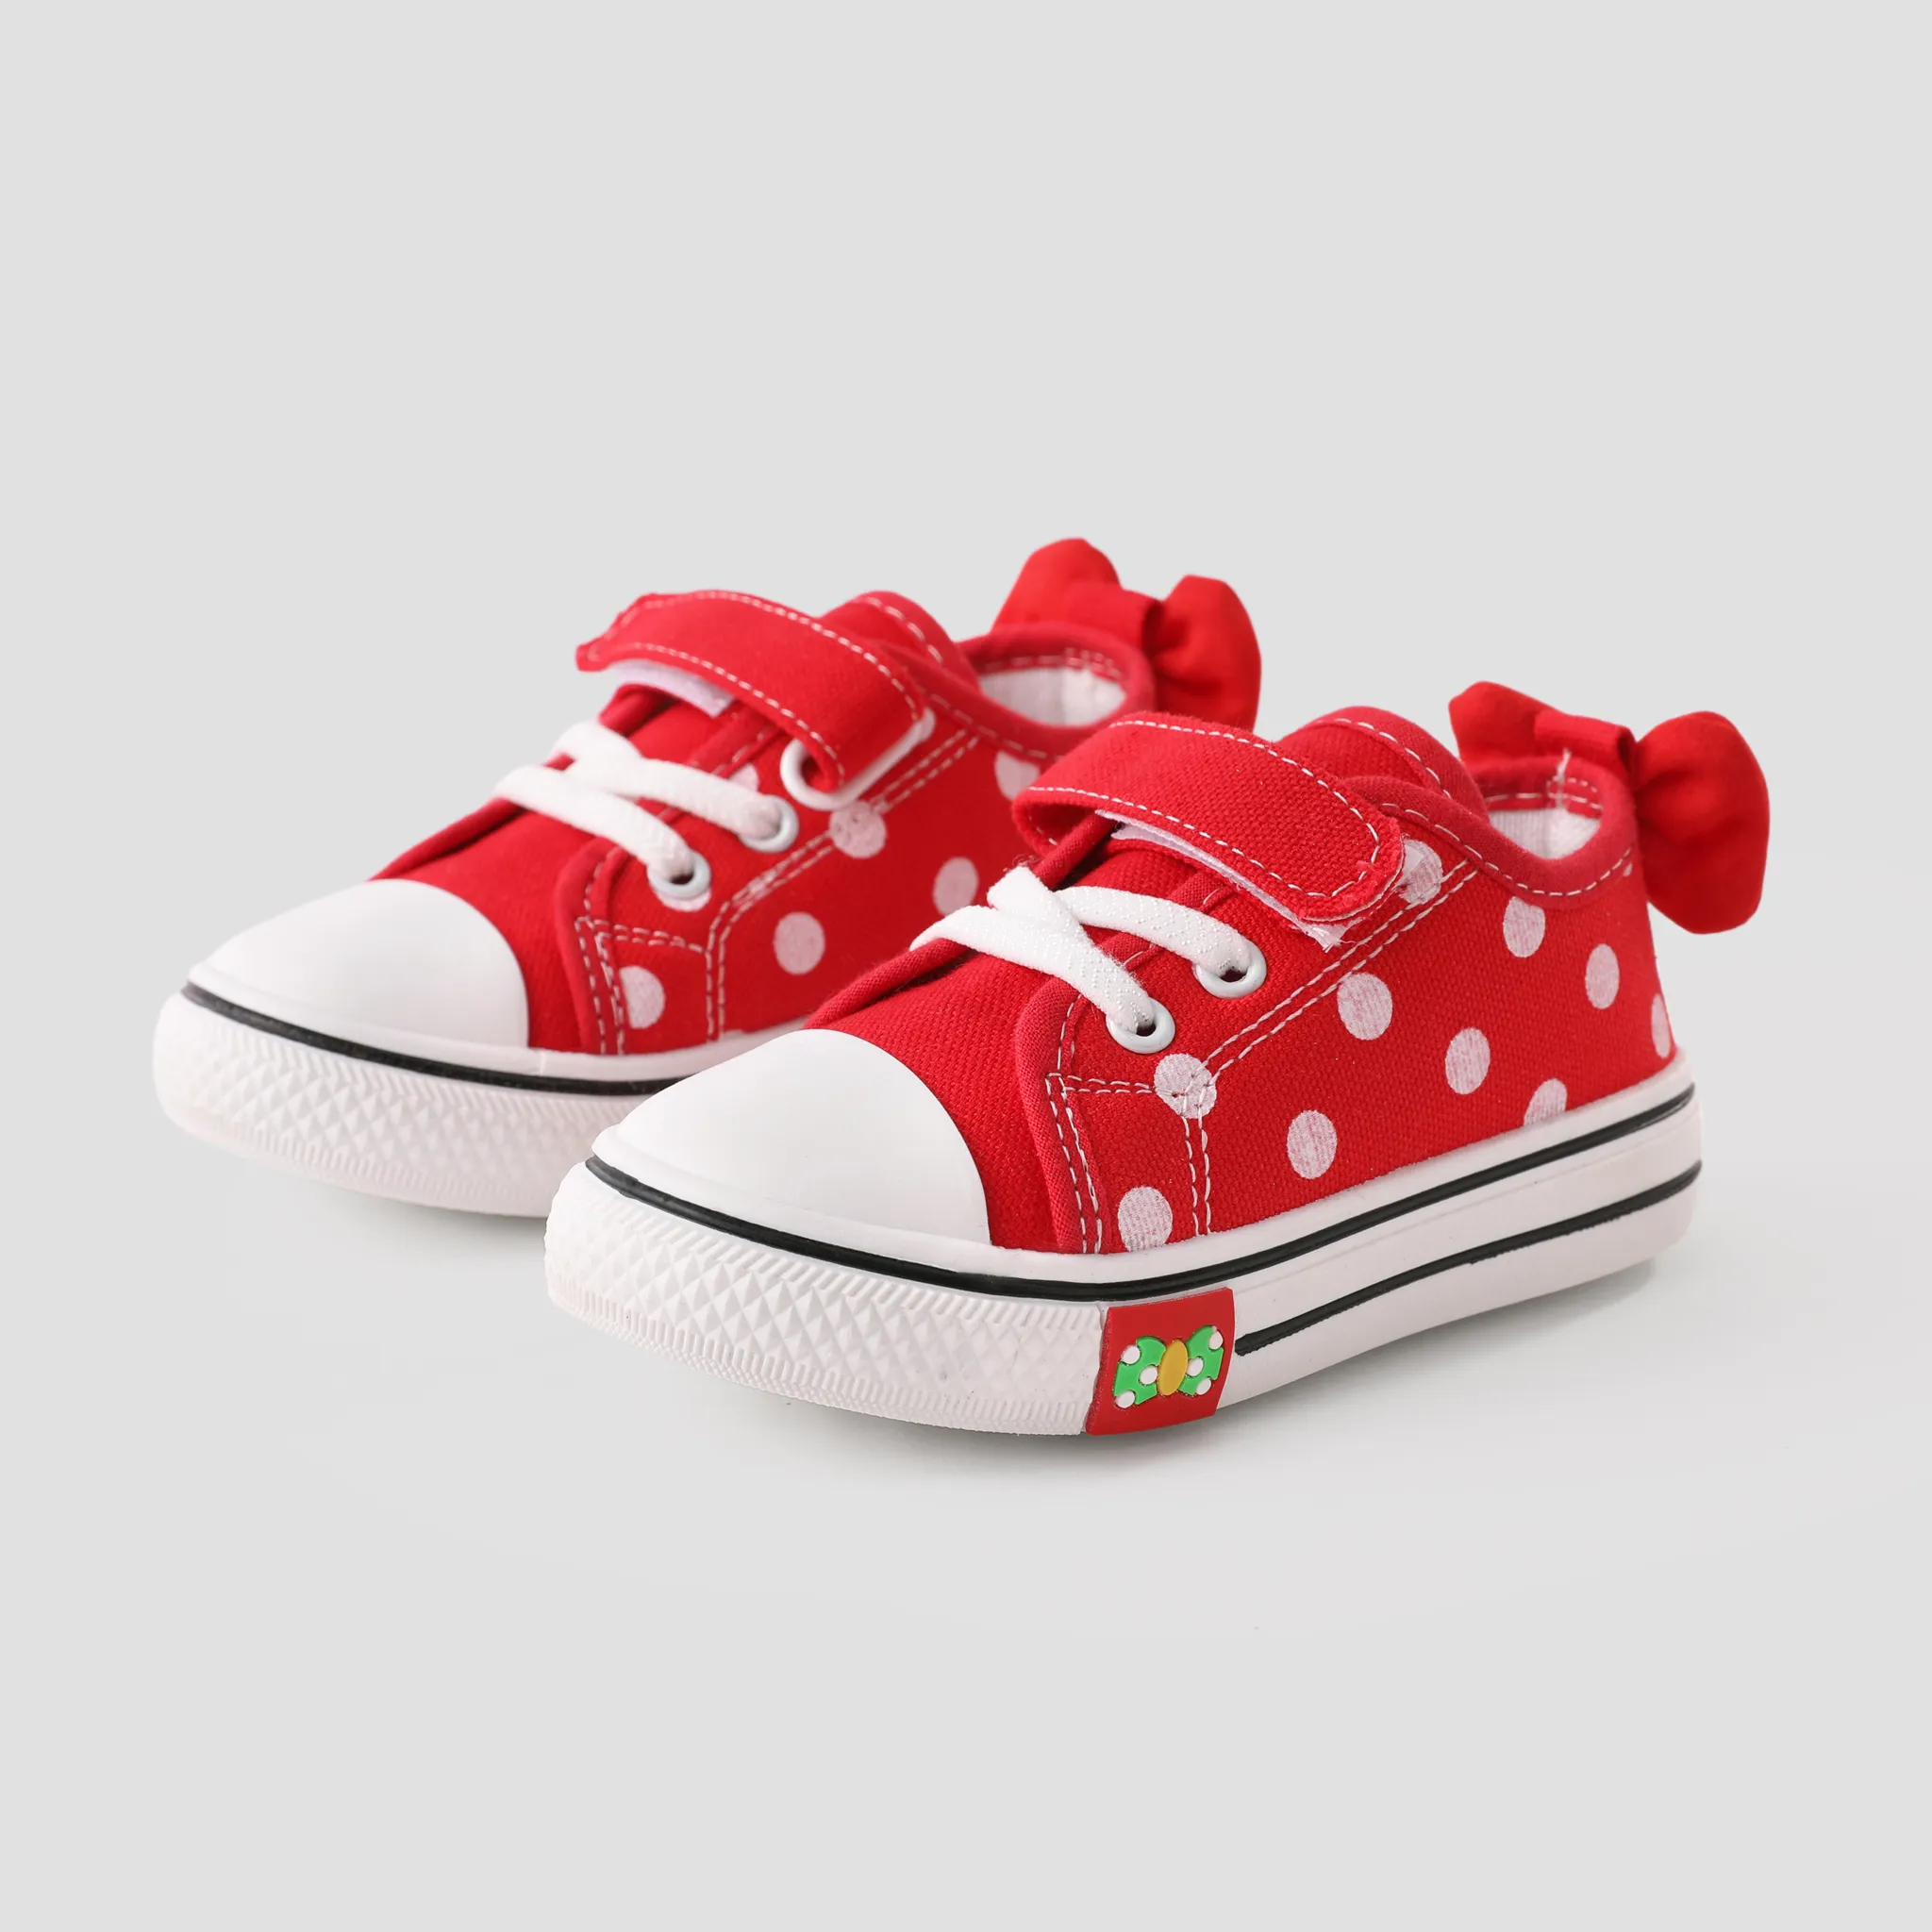 Toddler Girls' Polka Dot Design Bow Decor Velcro Casual Shoes